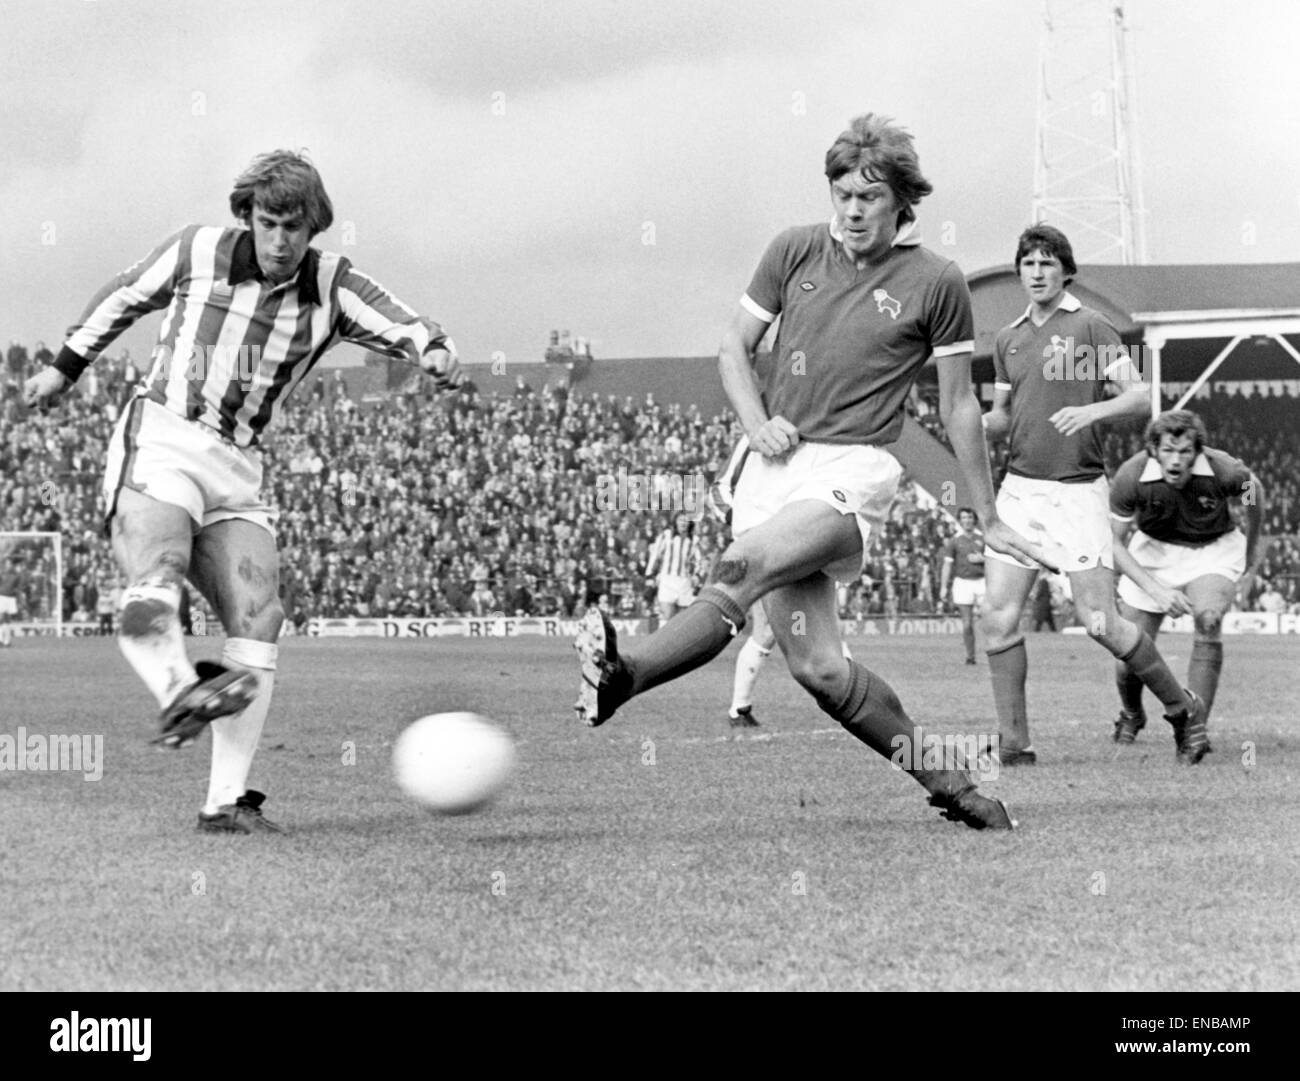 Stoke v Derby league match presso il Victoria terra, sabato 28 settembre 1974. Geoff Hurst di Stoke poteri un full blooded drive al Derby obiettivo che è andato largo, battendo fuori da un affrontato da David Nish. Punteggio finale: Stoke 1-1 Derby. Foto Stock